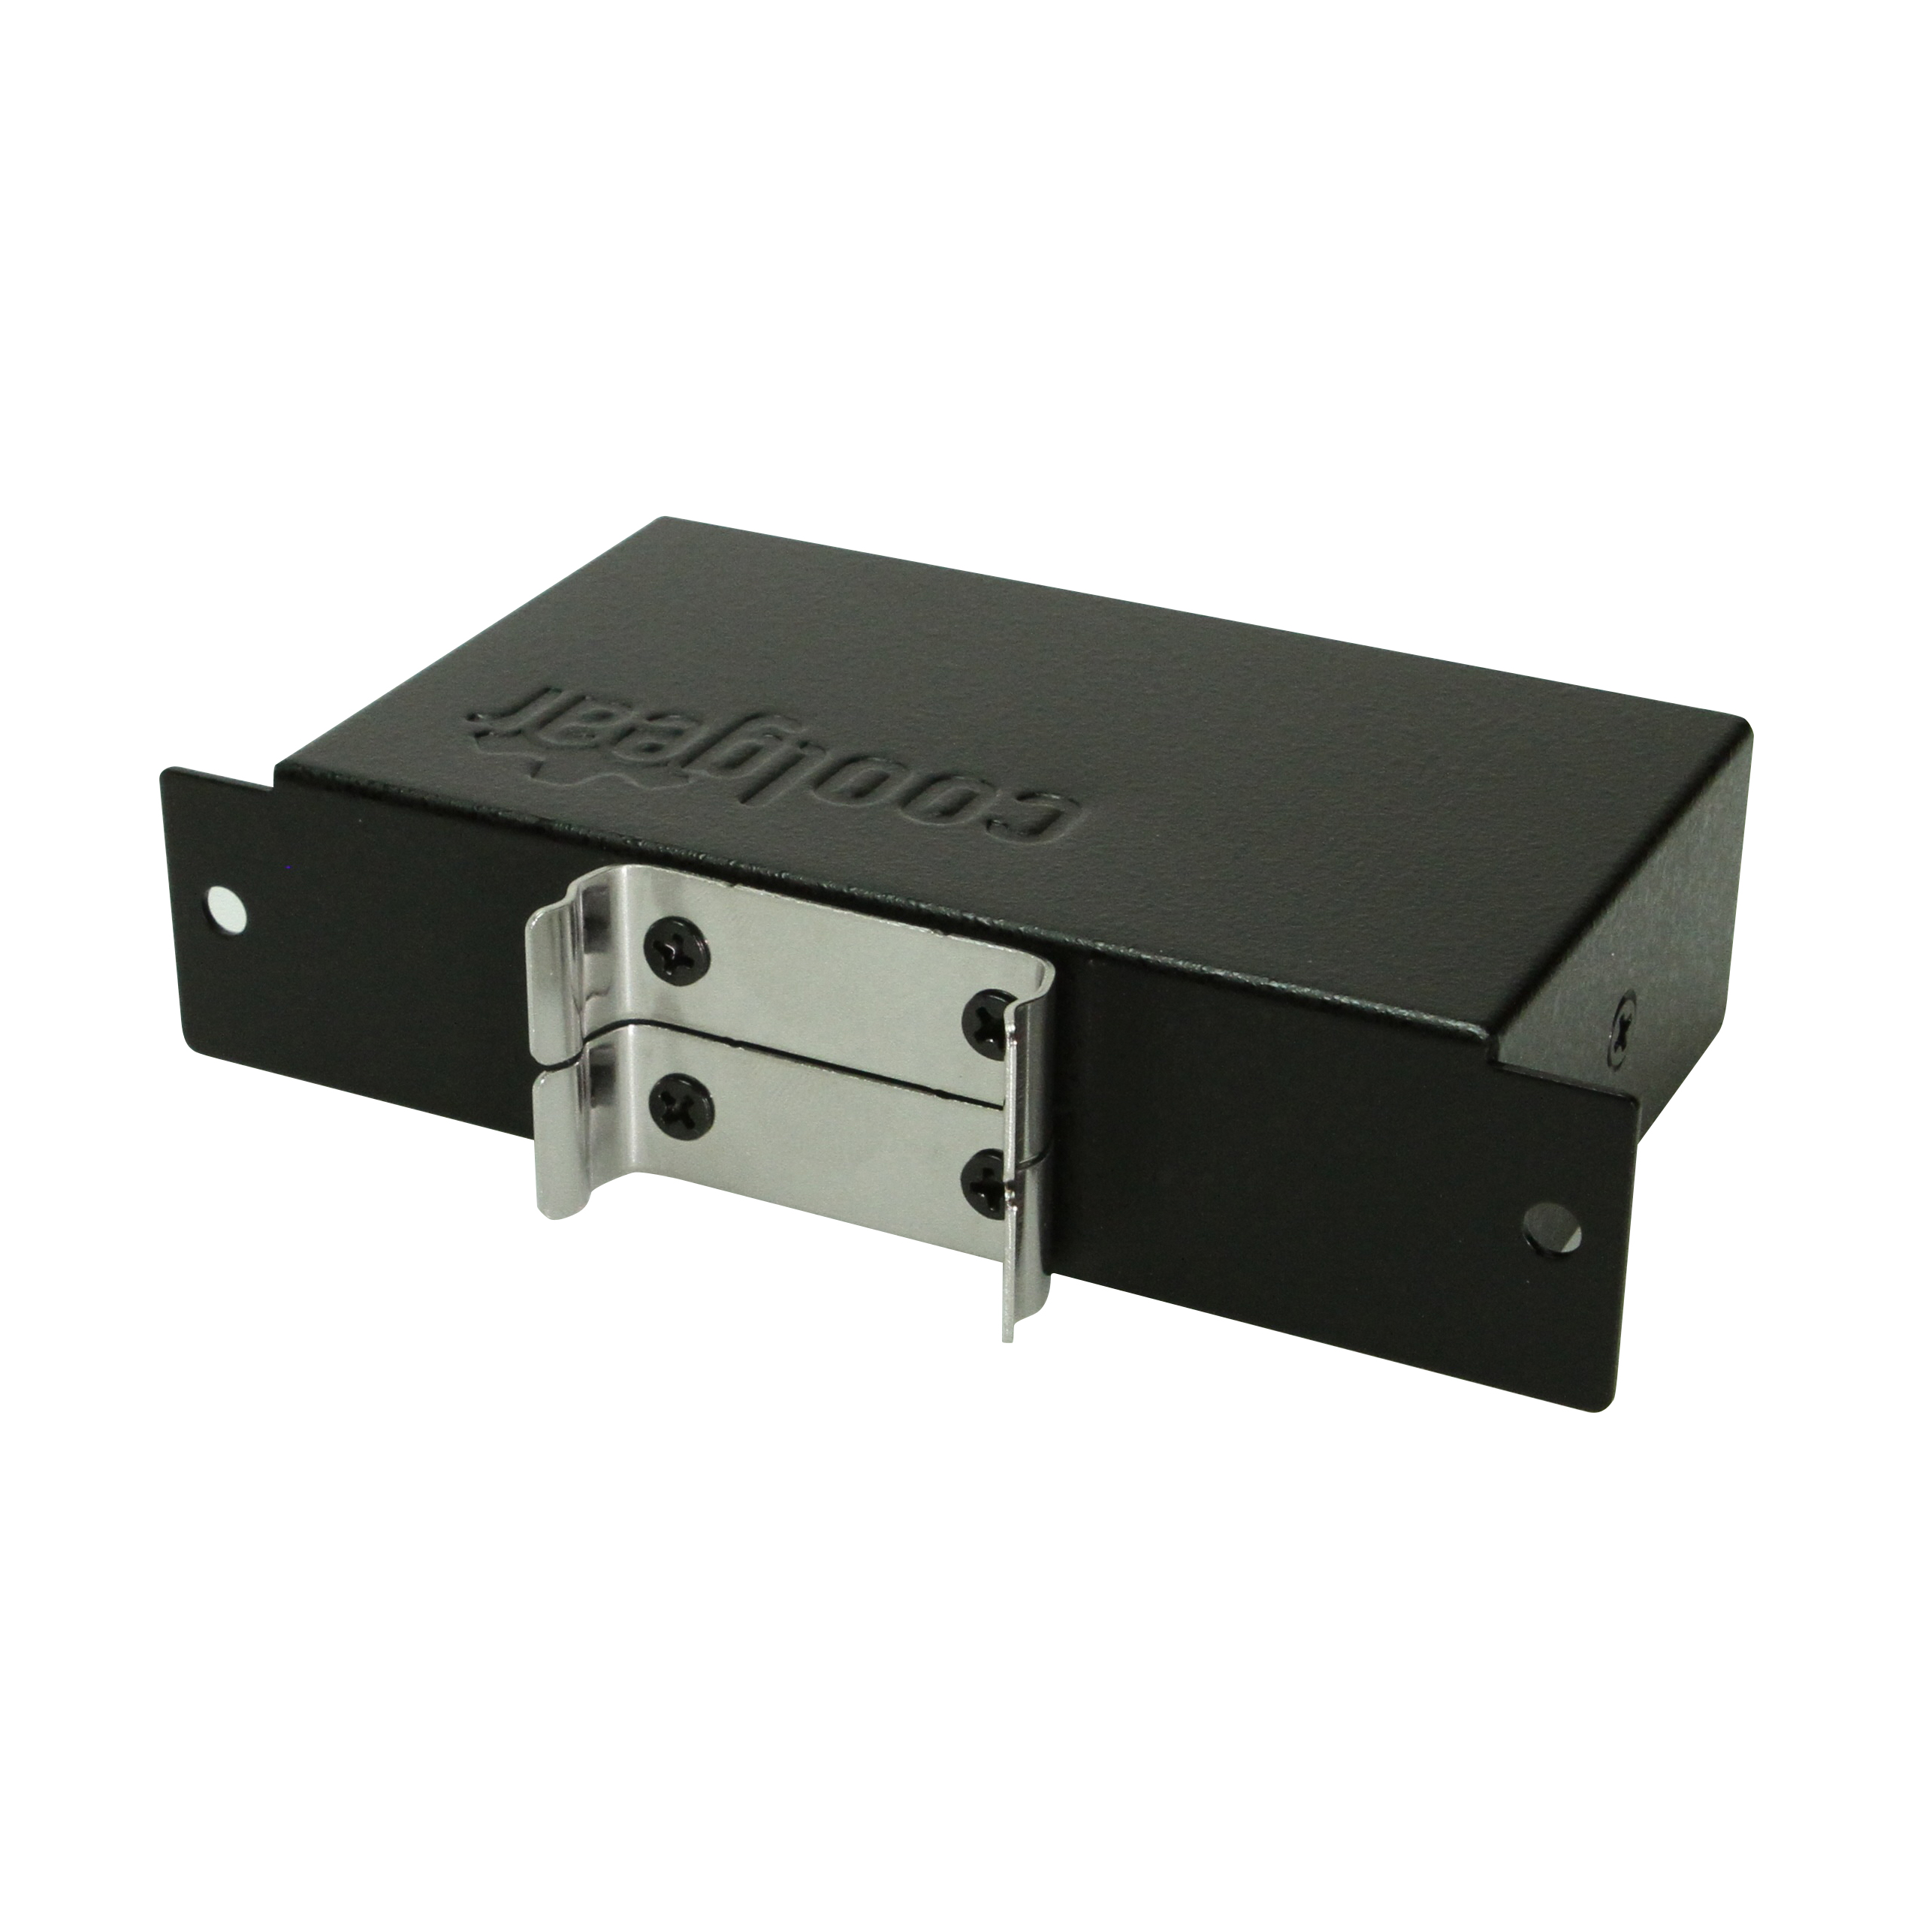 ***BRAND NEW 4-Port USBG-4u2ml 2.0 Hub w/ DIN RAIL Mounting Kit by CoolGear